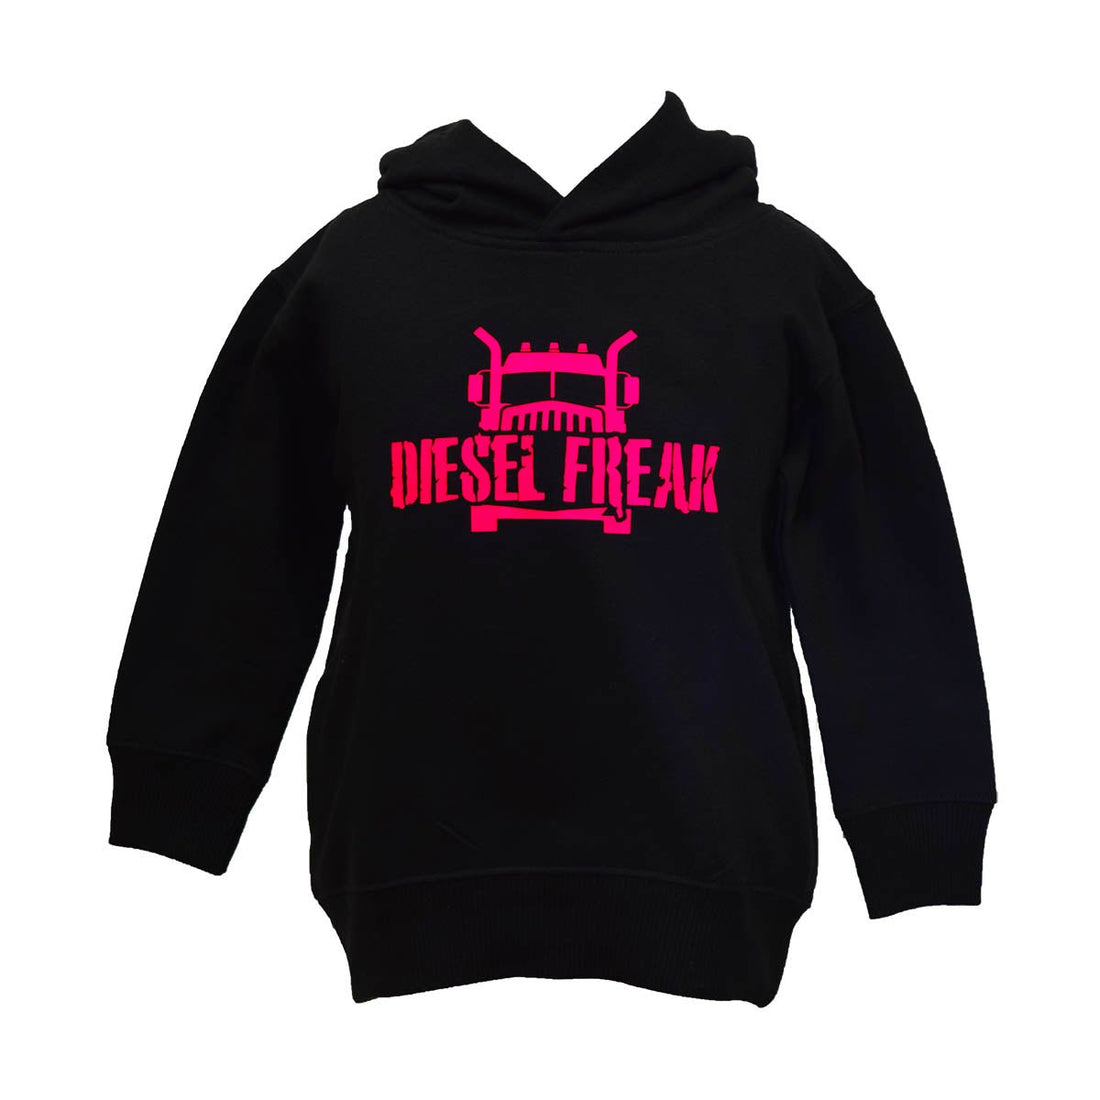 Truckin Freak Black & Pink Youth Hoodie - Diesel Freak